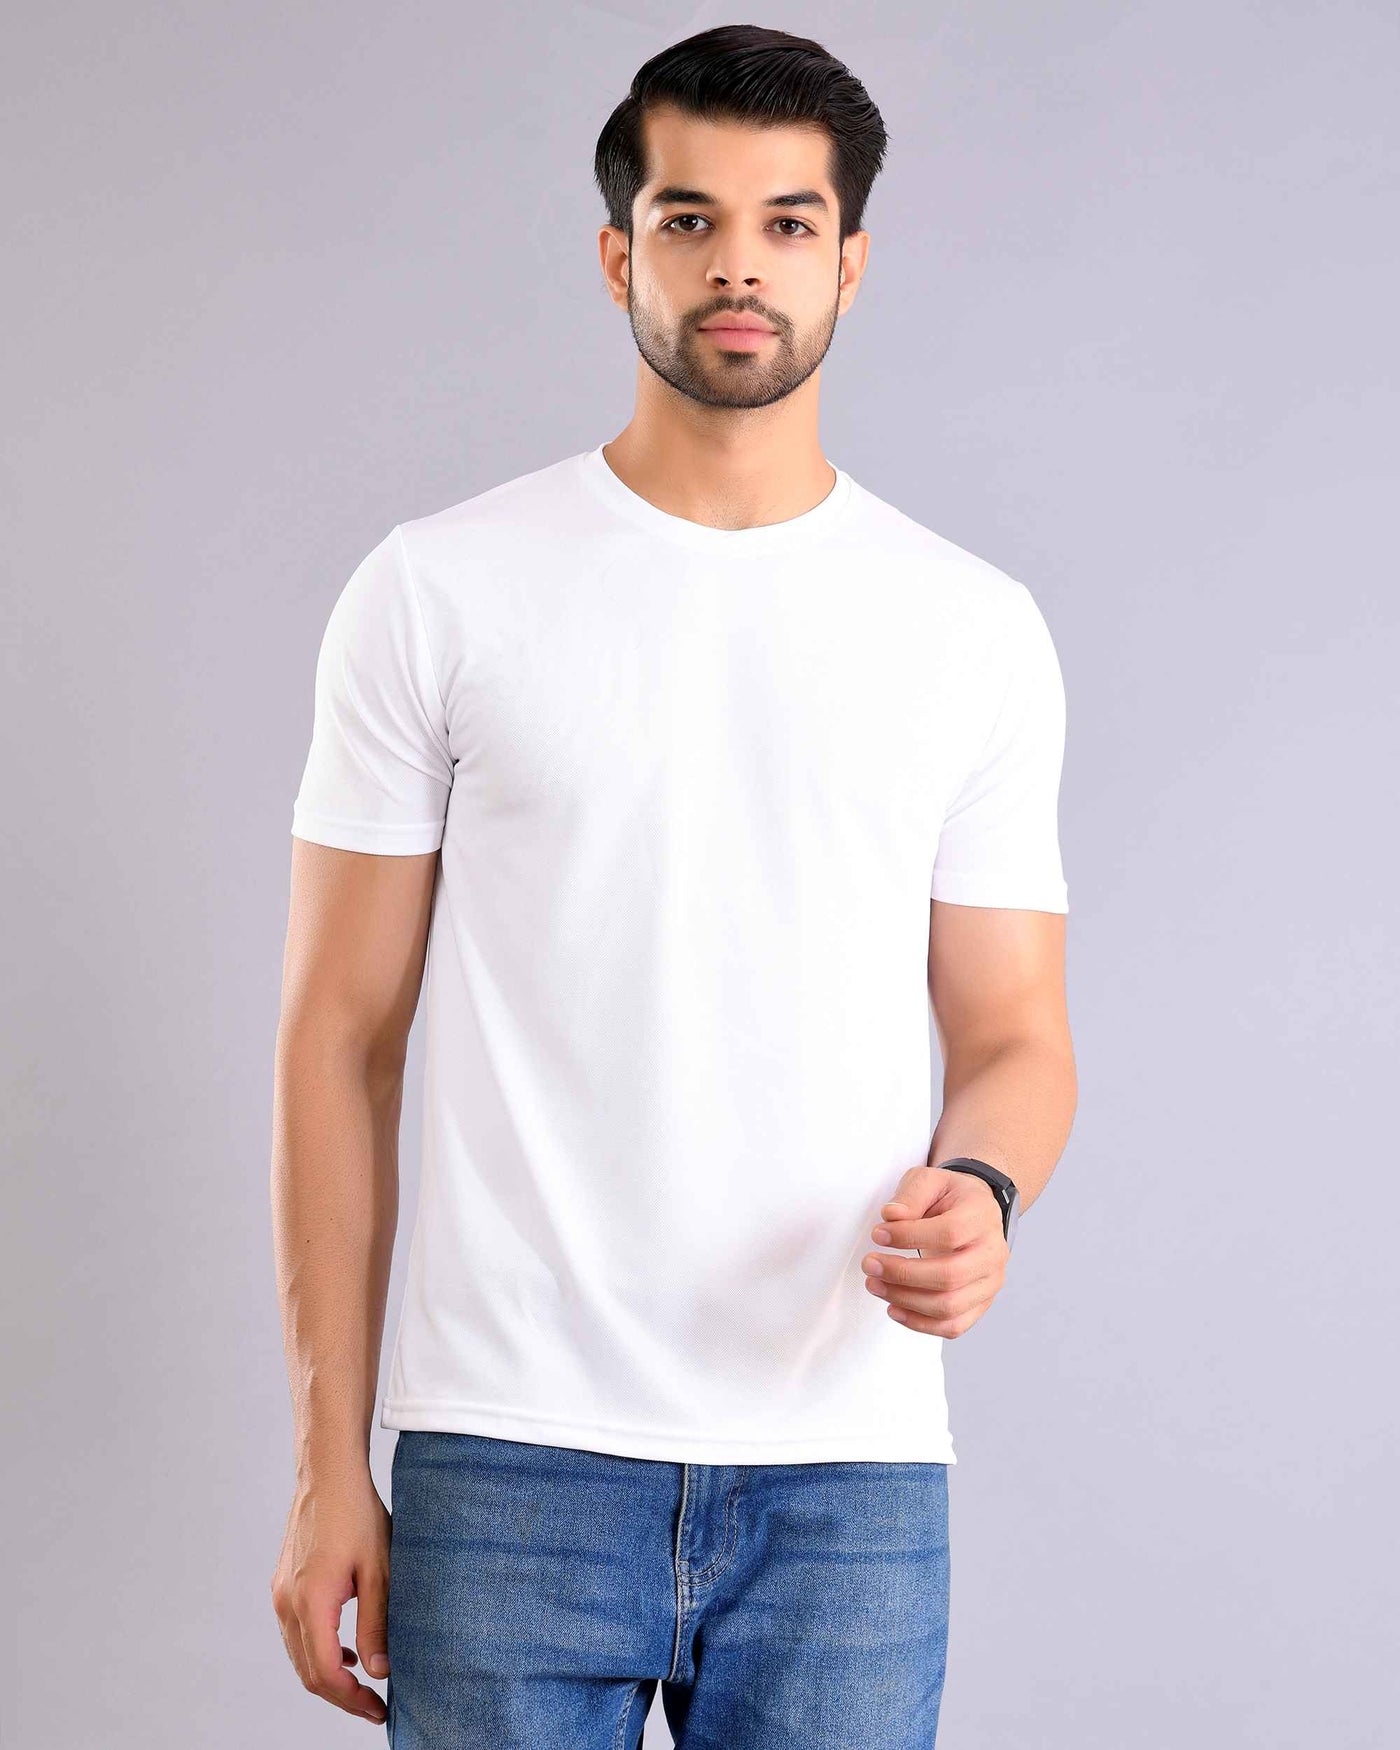 White Sport T-Shirt